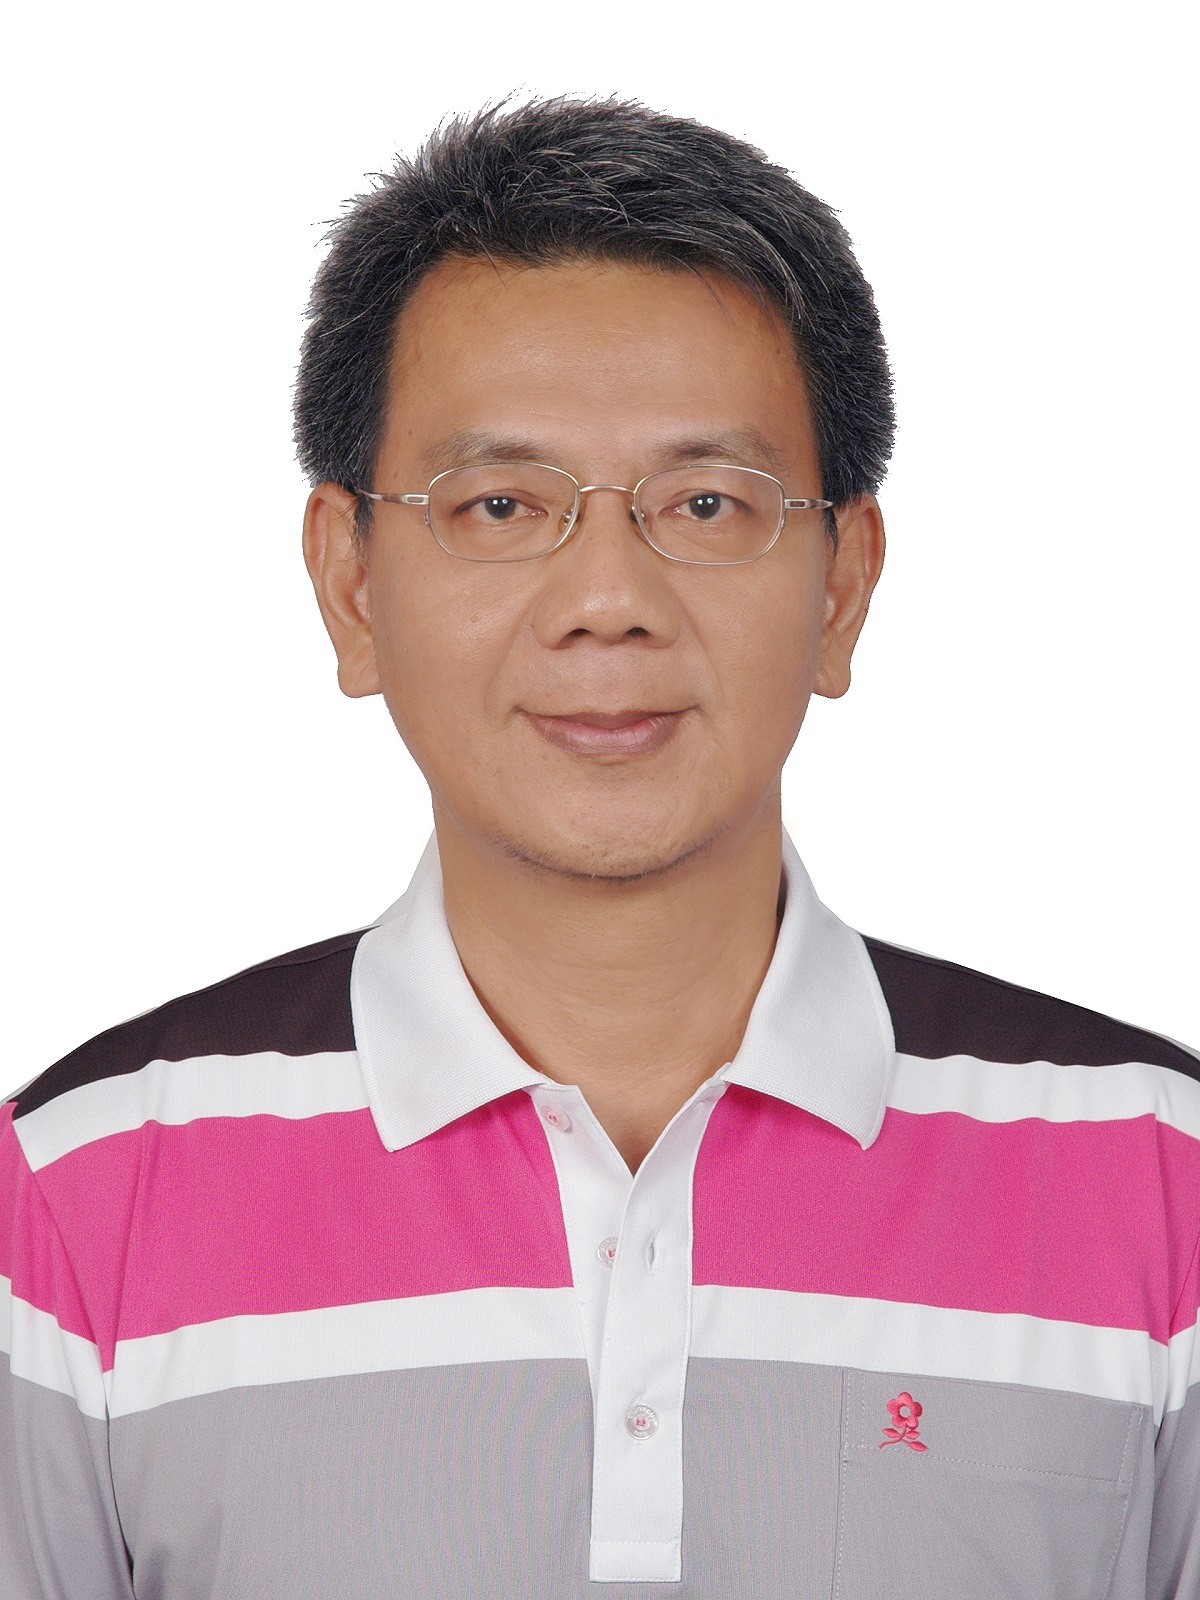 Prof. Shing-Tai Pan